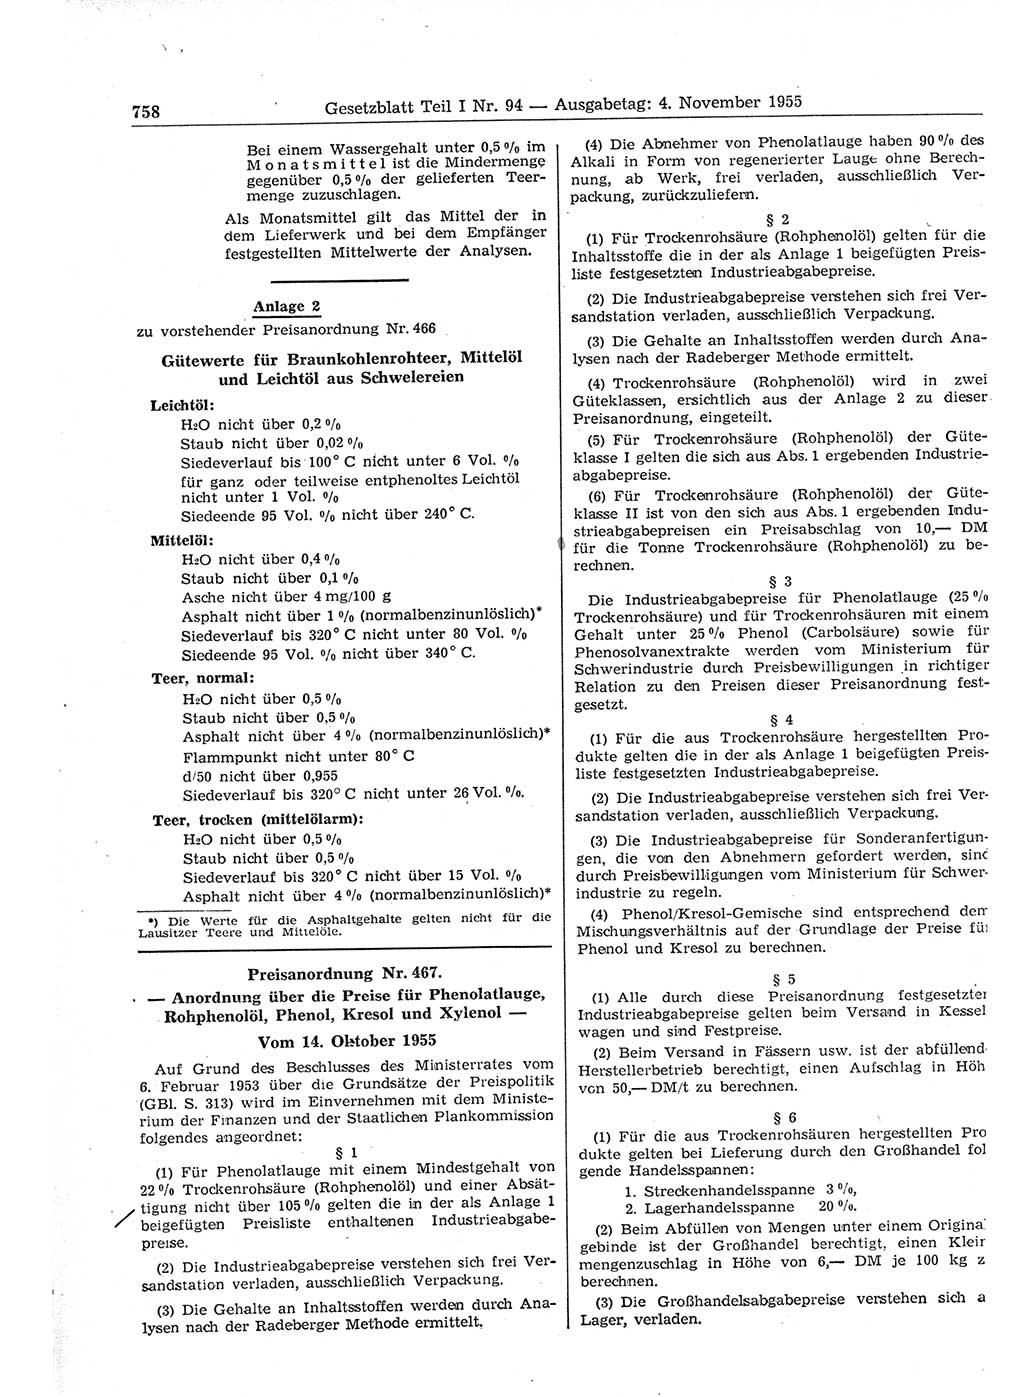 Gesetzblatt (GBl.) der Deutschen Demokratischen Republik (DDR) Teil Ⅰ 1955, Seite 758 (GBl. DDR Ⅰ 1955, S. 758)